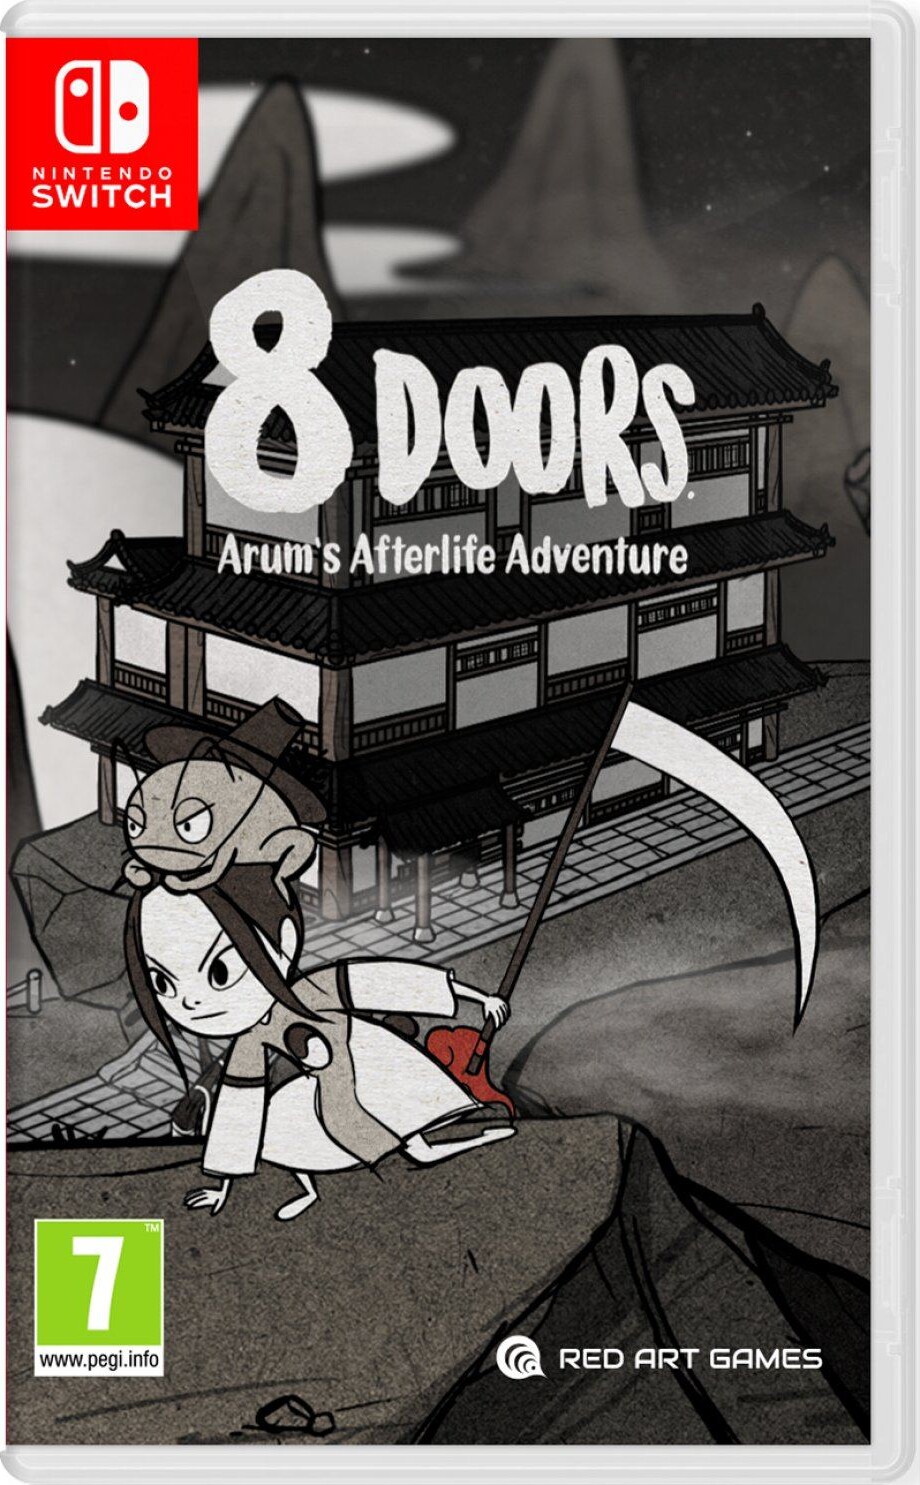 8doors: Arum's Afterlife Adventure - Nintendo Switch